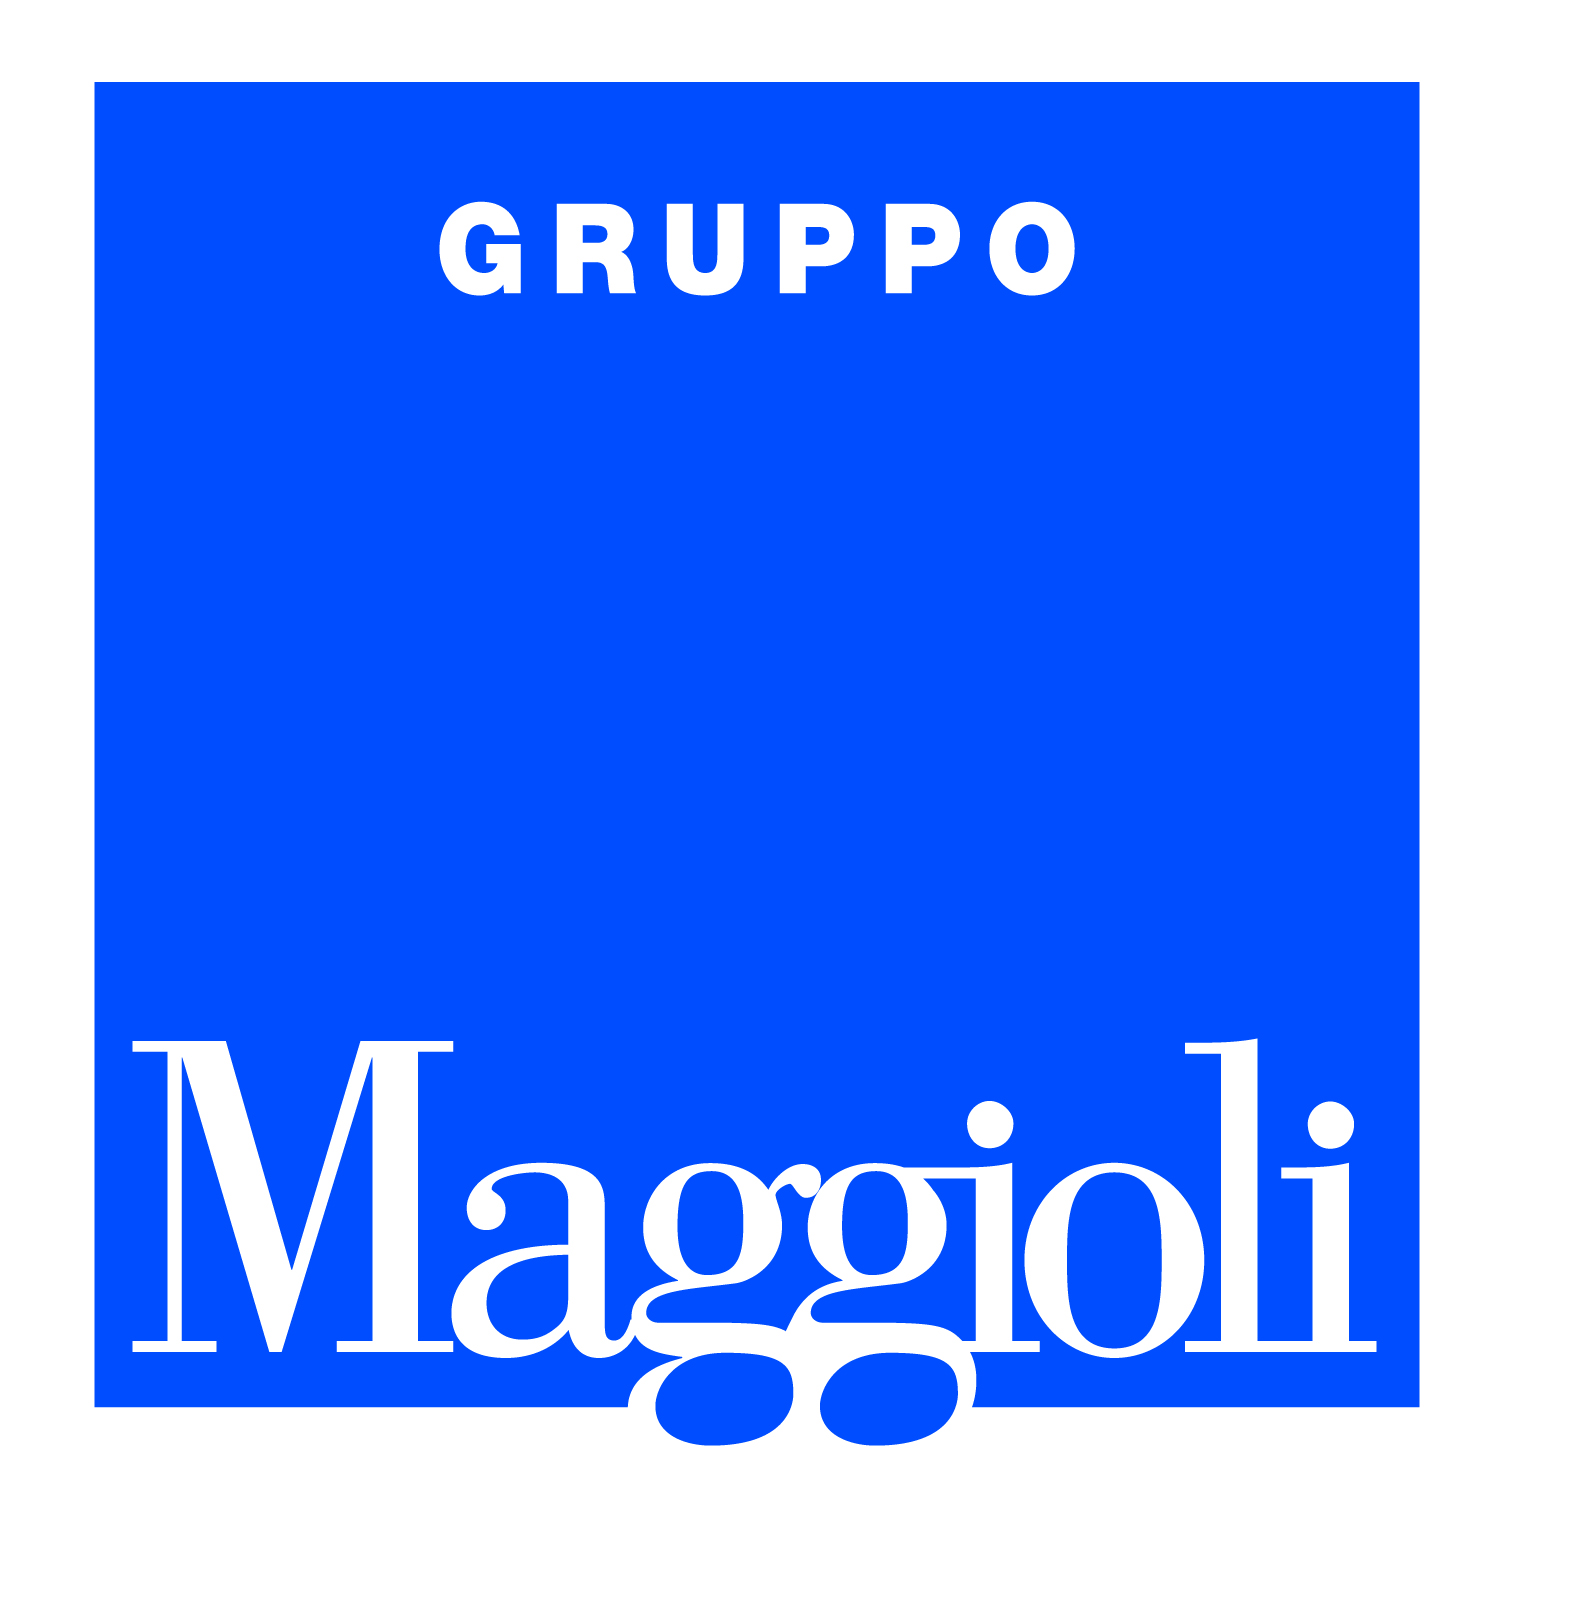 Maggioli